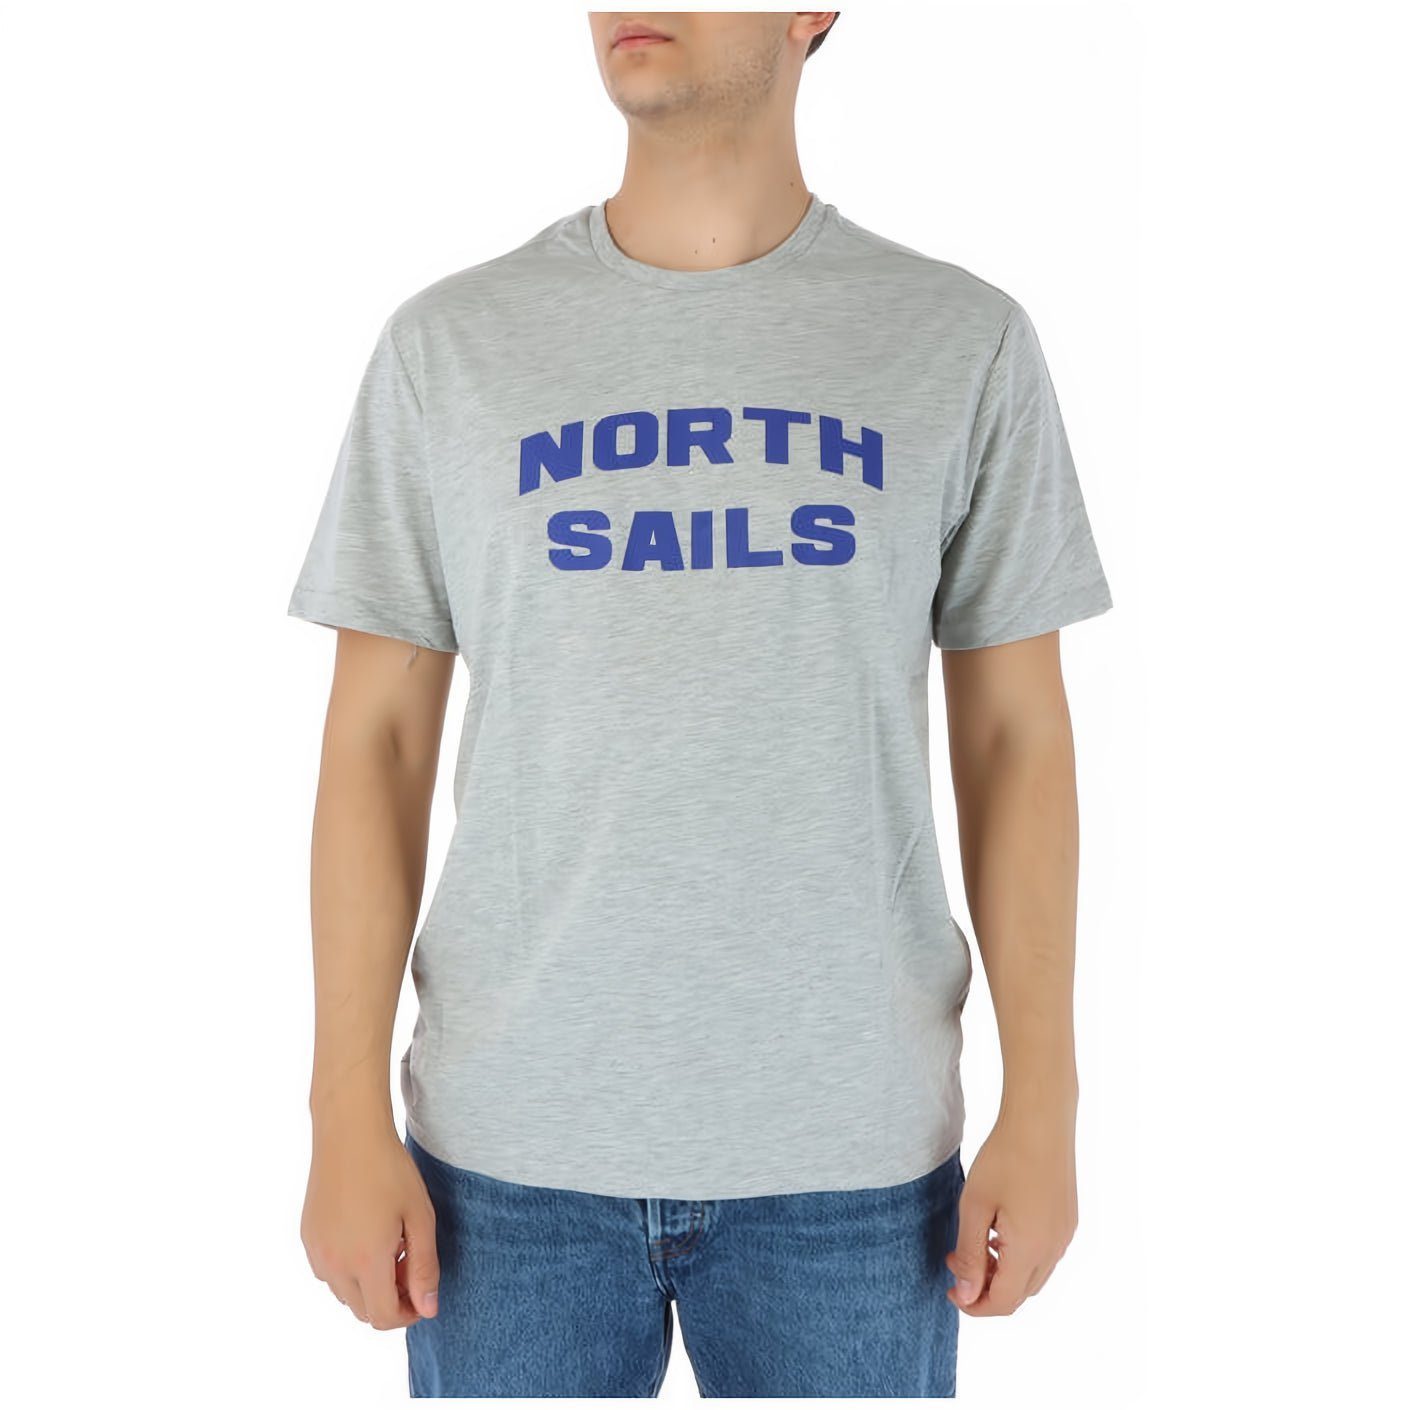 für Sails, modische modische das T-Shirt Sails North North Herren! Herren Entdecke T-Shirt T-Shirt